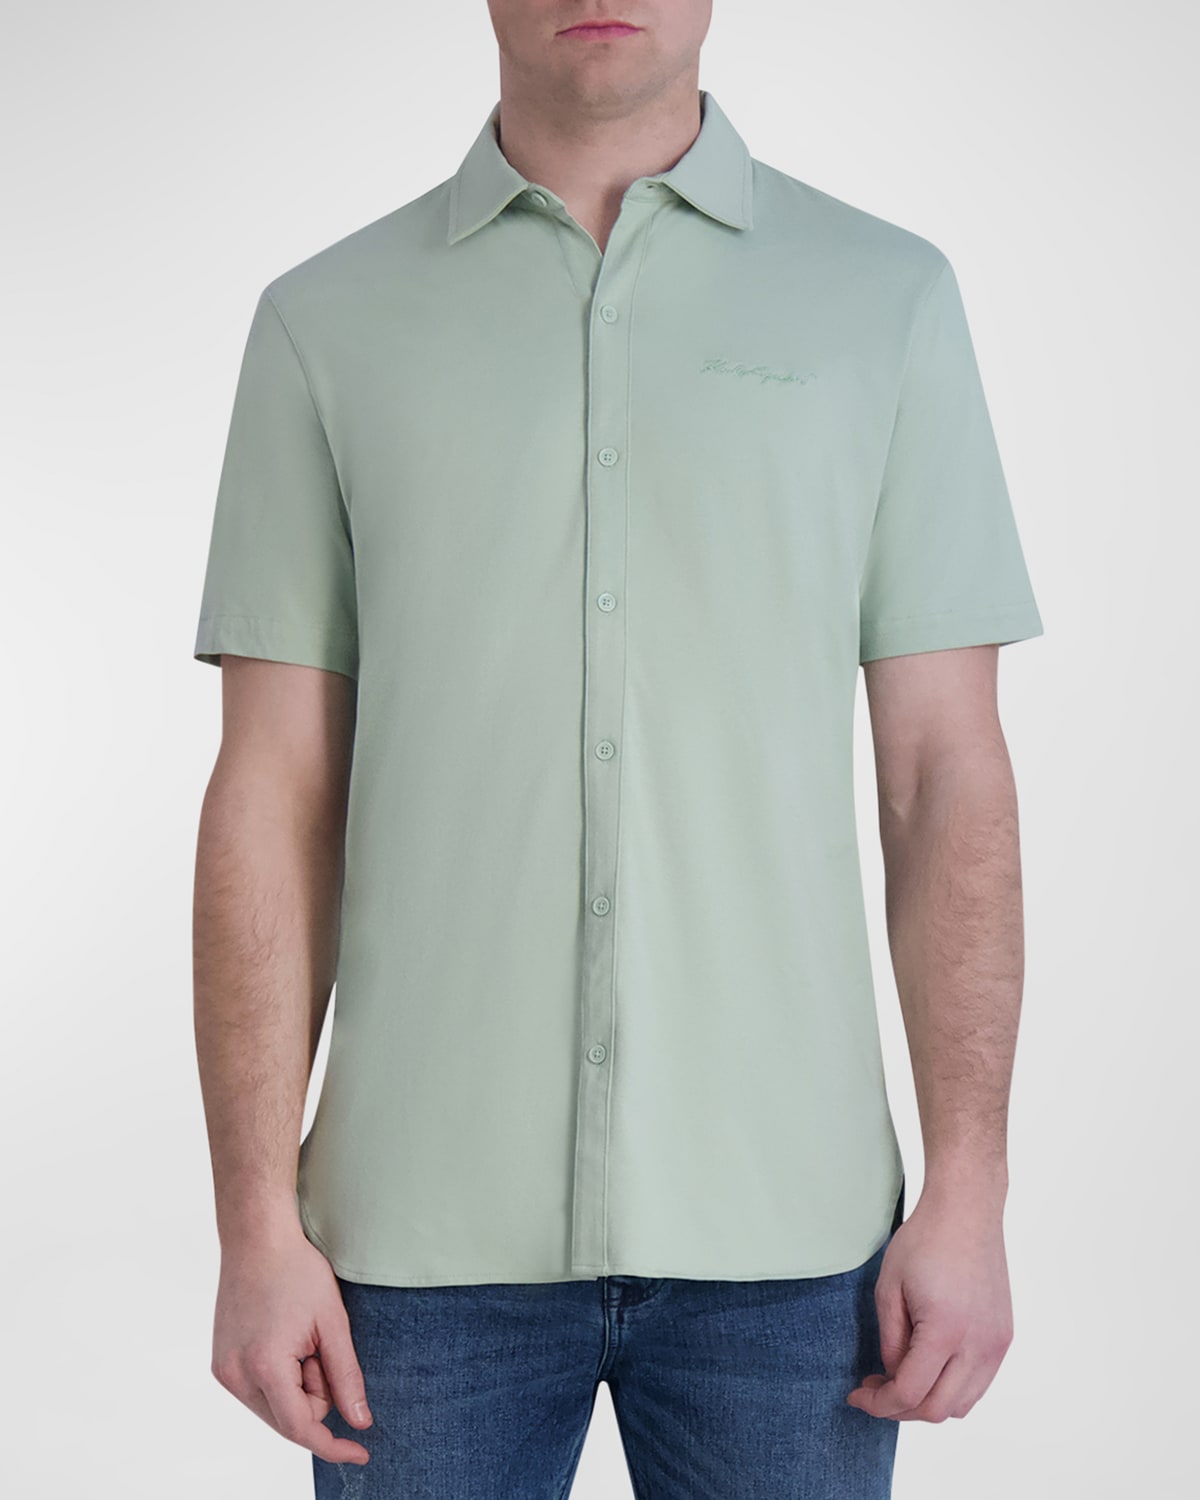 Men's Jersey Button-Down Shirt